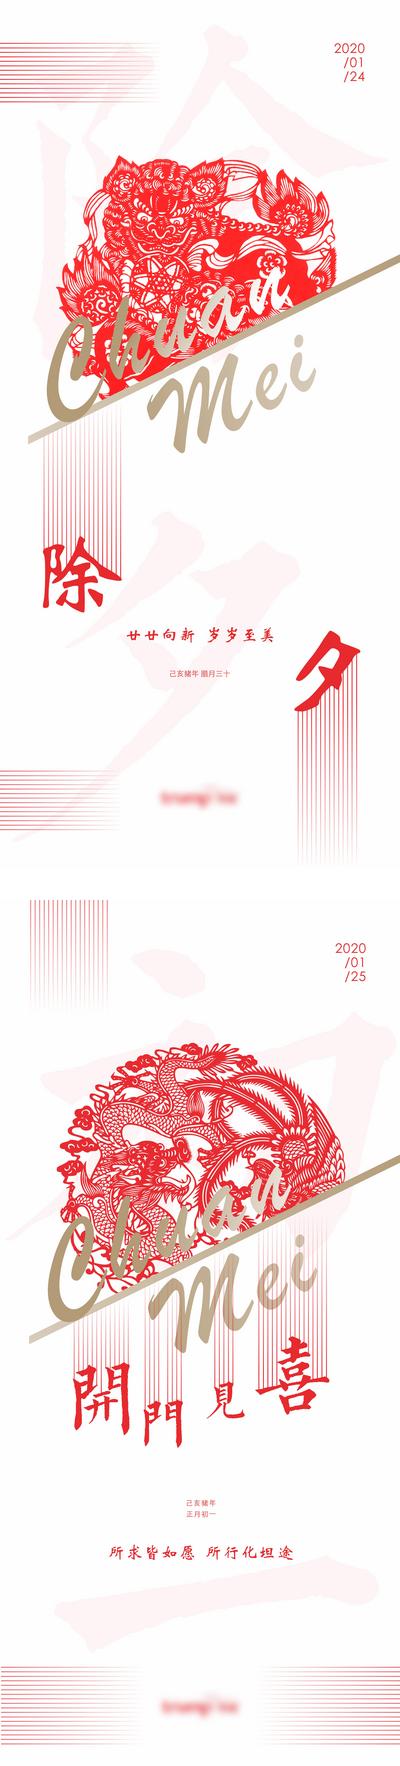 【南门网】海报 地产 中国传统节日 春节 除夕 高端 红白 窗花 系列